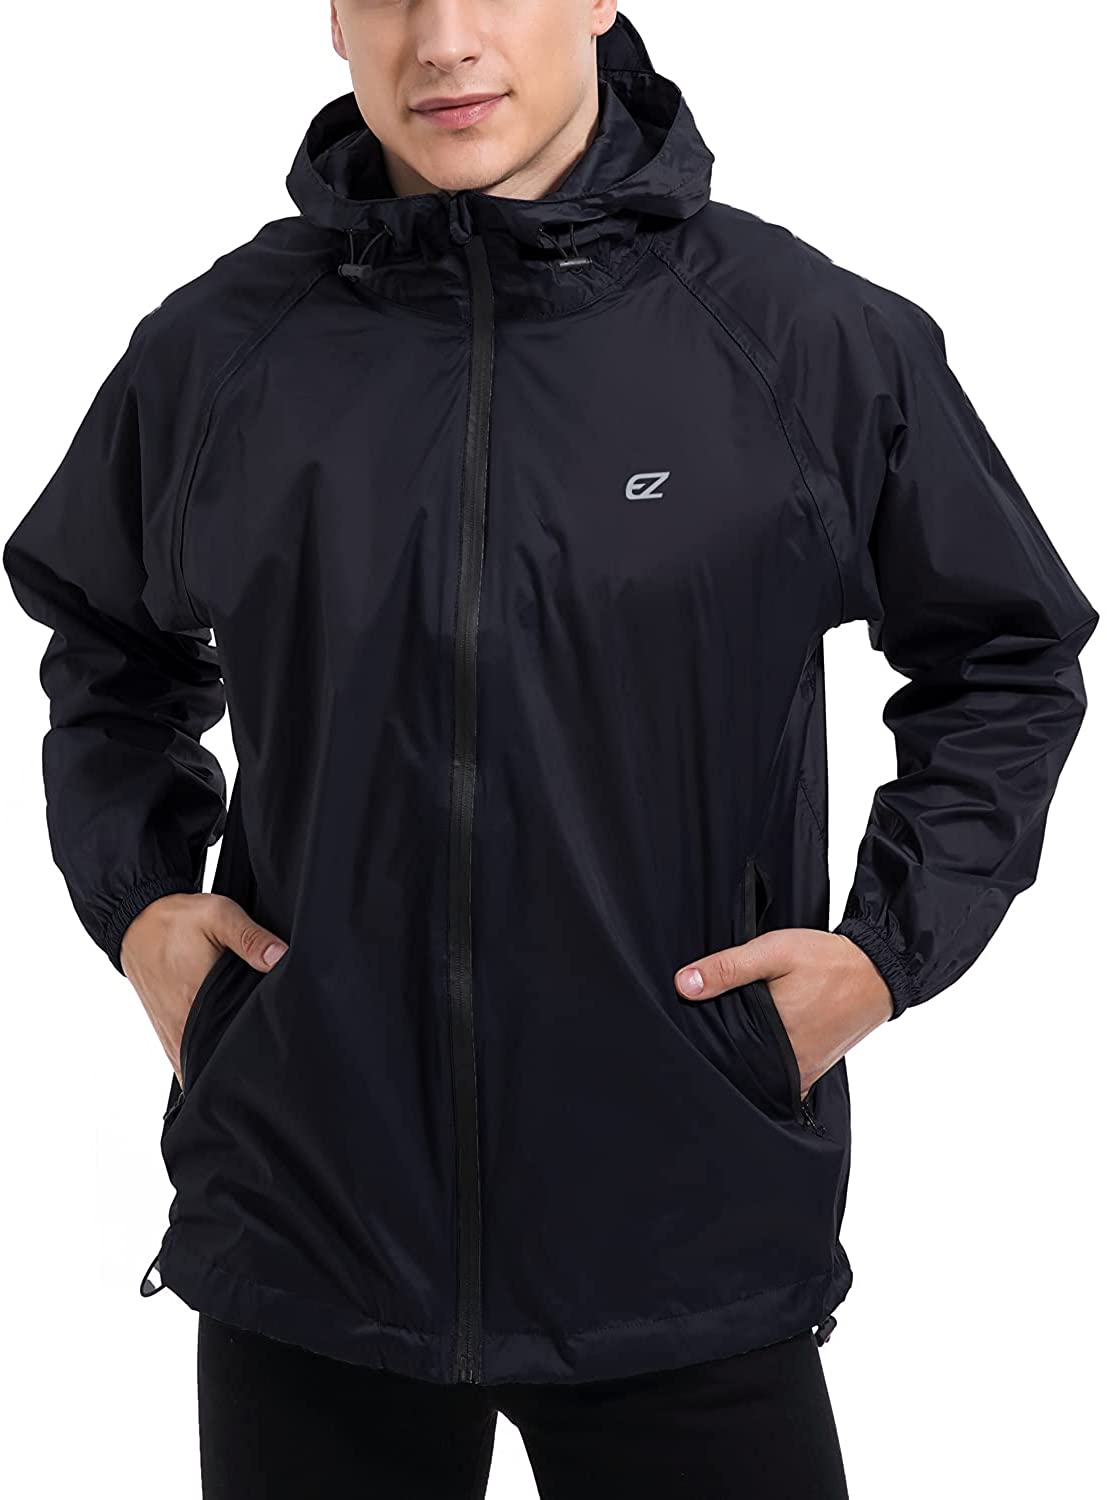 L EZRUN Rain Coat Rain Jacket Packable Waterproof Windbreaker Hooded Gray